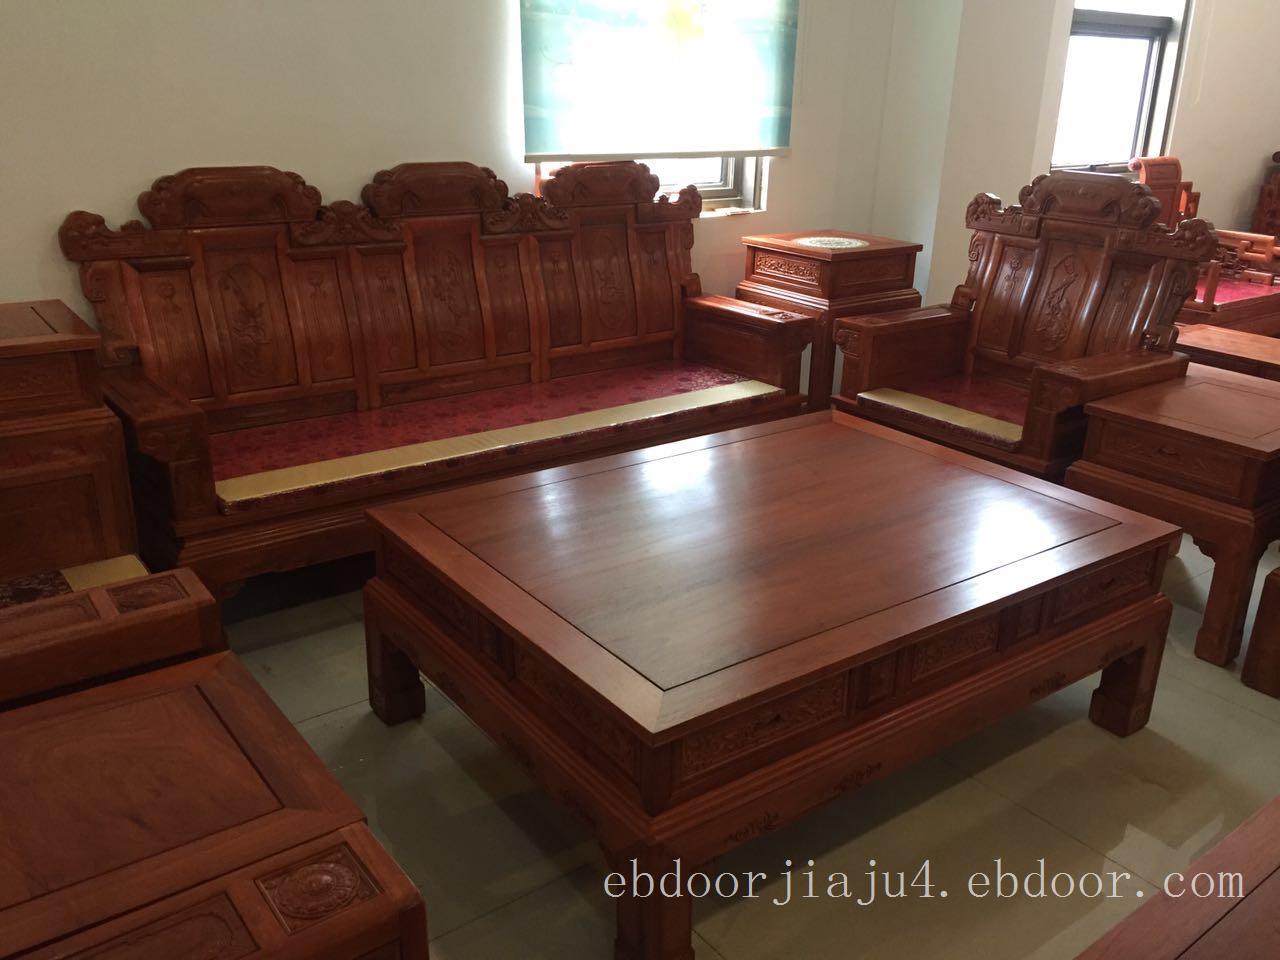 古森红木客厅系列明式宝座沙发GS001_古森红木中式红木家具_太平洋家居网产品库